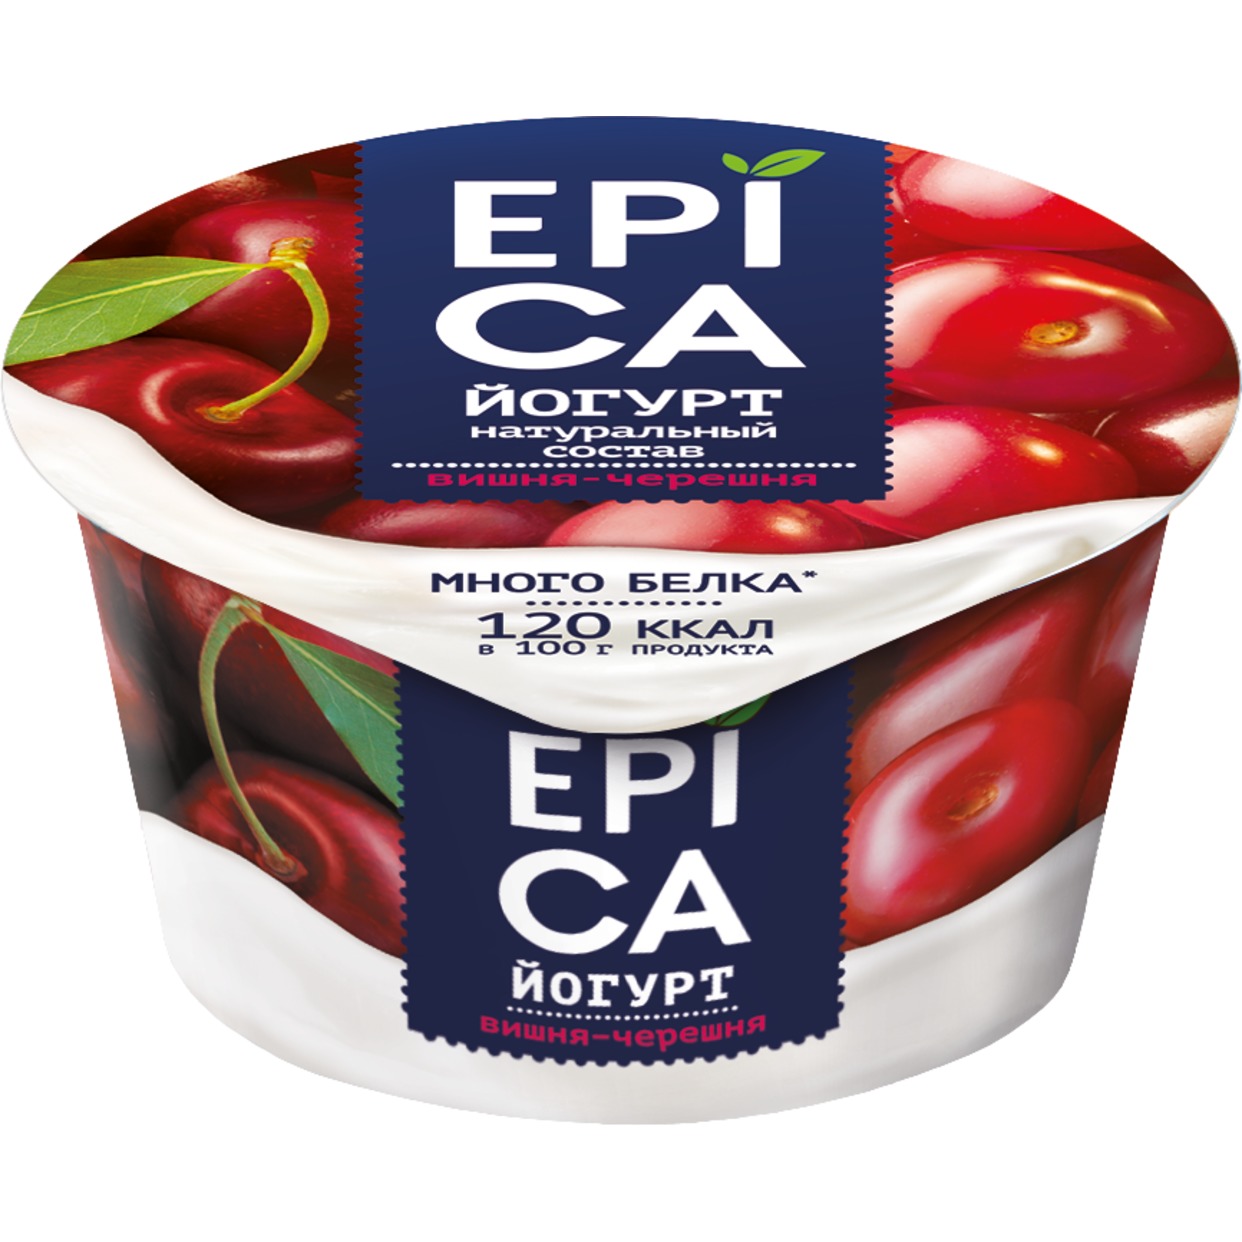 Йогурт с вишней и черешней "EPICA". Массовая доля жира 4,8% 130г по акции в Пятерочке